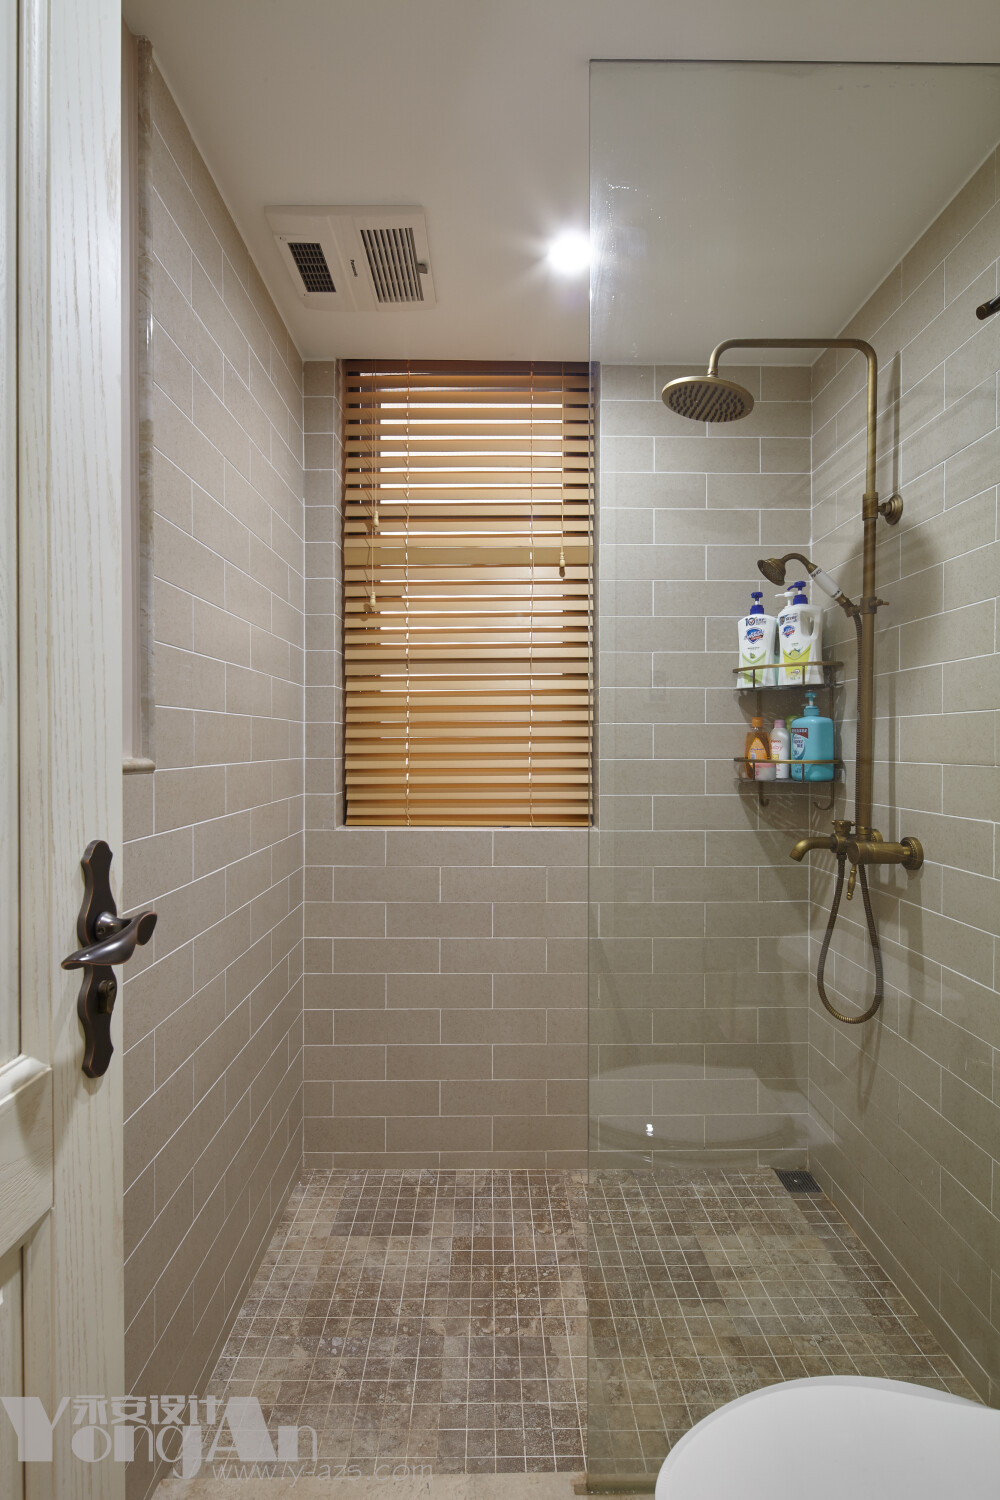 公卫 卫生间 浴室 深圳永安设计 美式 设计